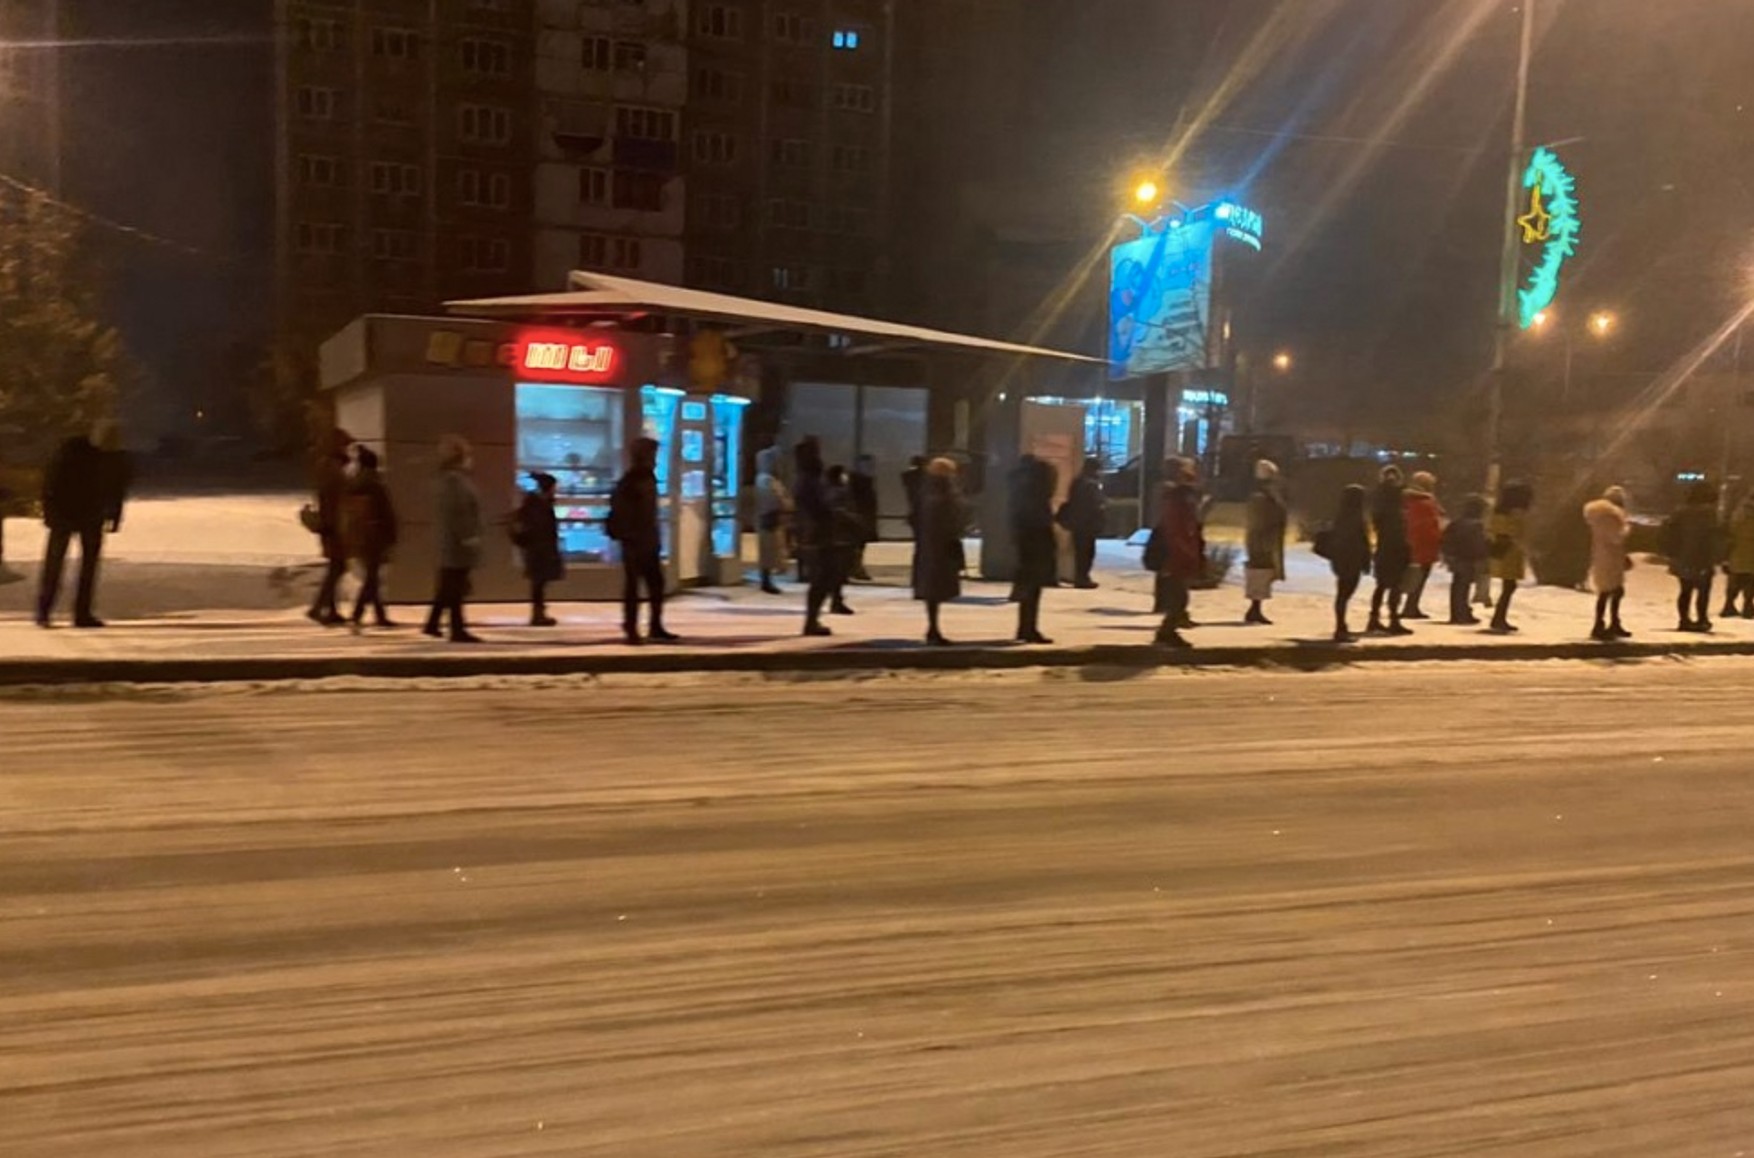 Протестуючі проти транспортної реформи жителі Новокузнецька зайняли міську адміністрацію і провели в ній ніч